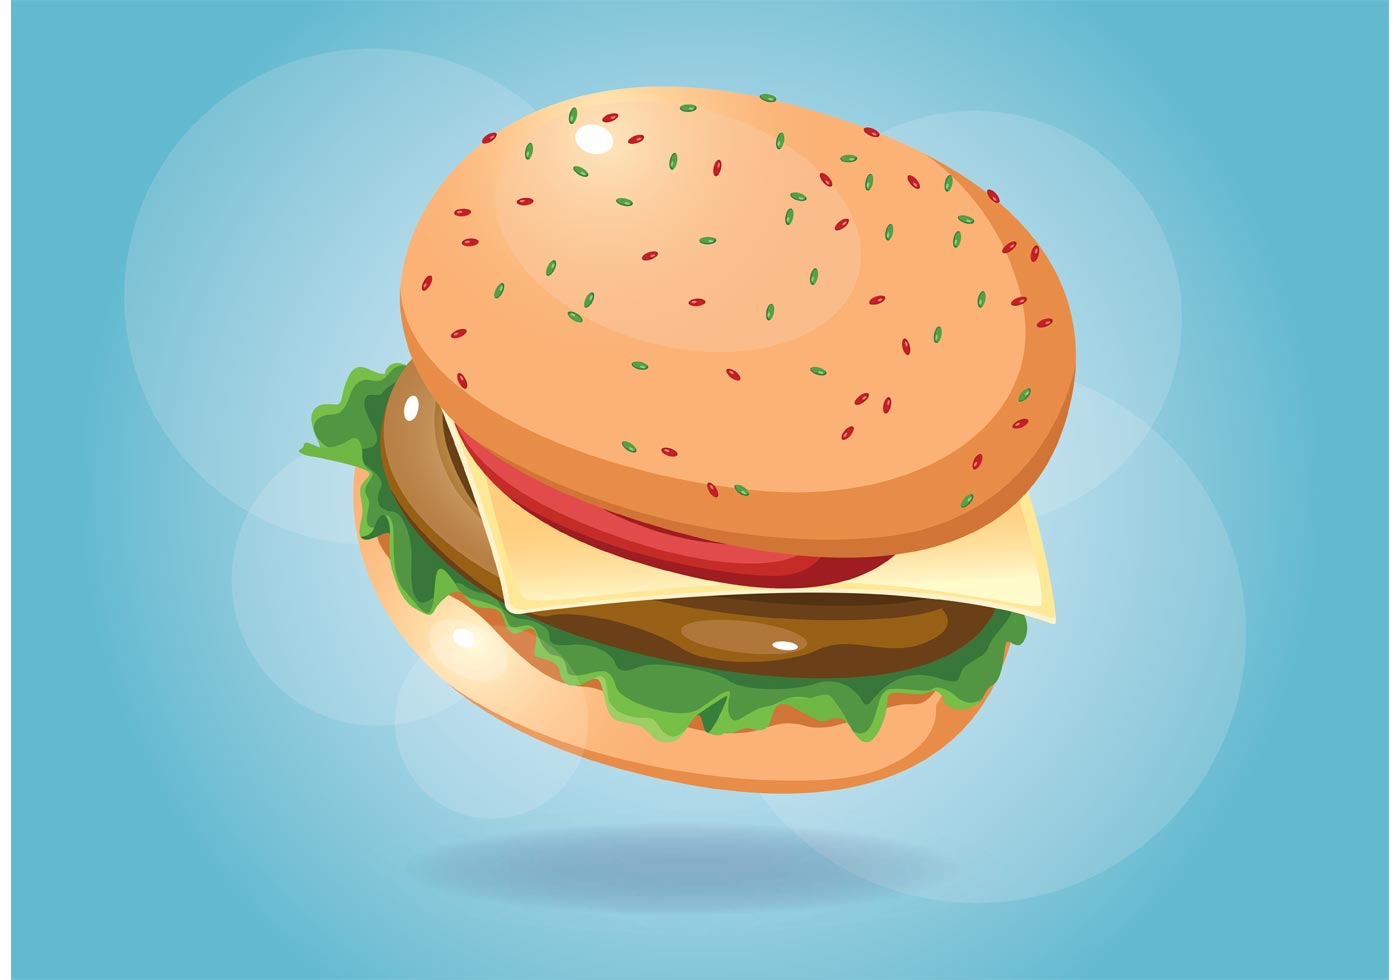 Burger Vector Food - Download Free Vectors, Clipart ...